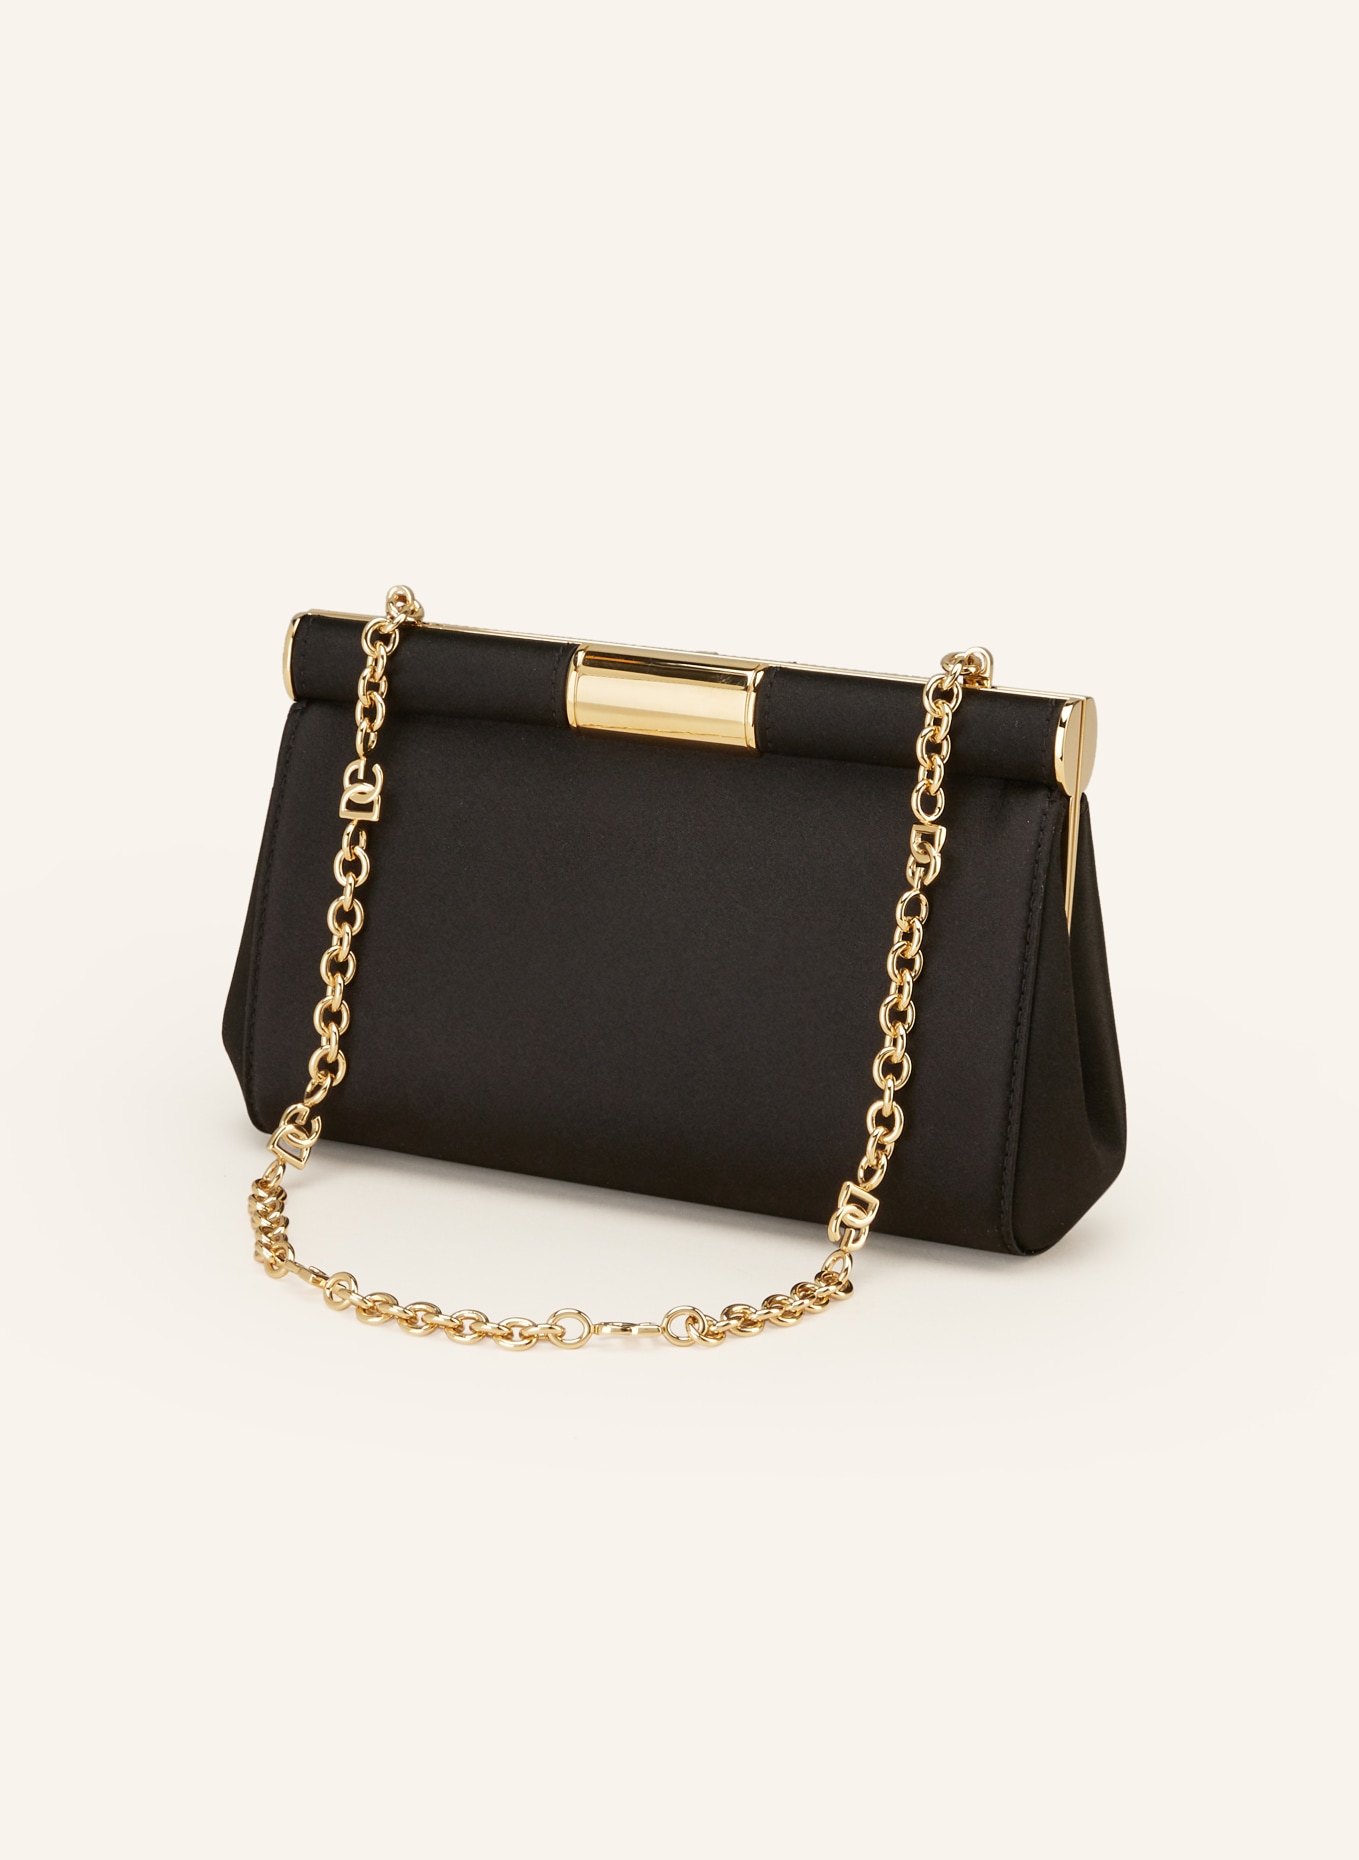 DOLCE & GABBANA Handbag MARLENE, Color: BLACK (Image 2)